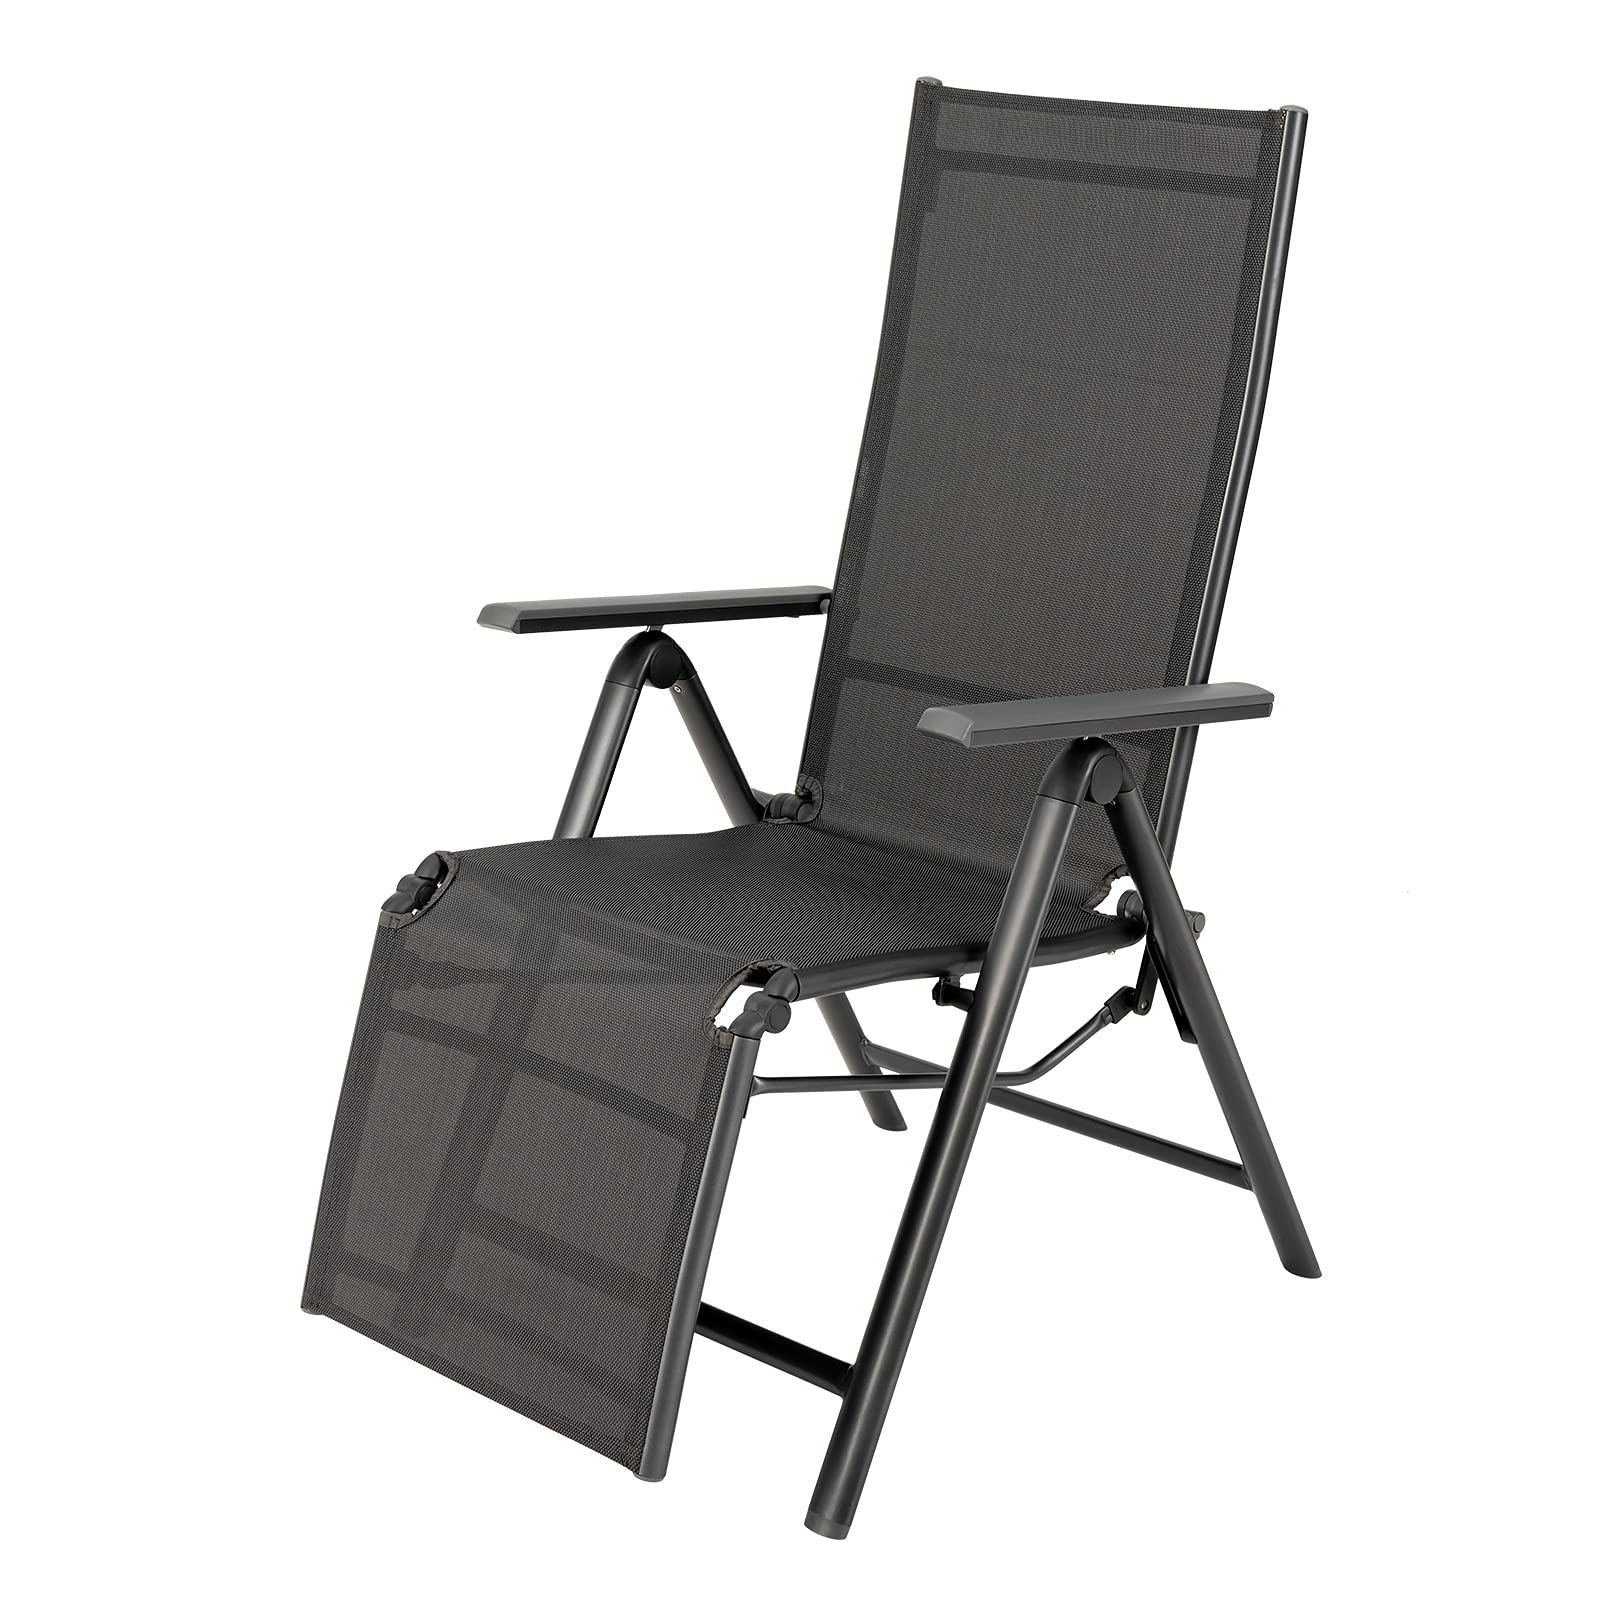 Giantex Reclining Patio Chairs Folding Lounge Chair